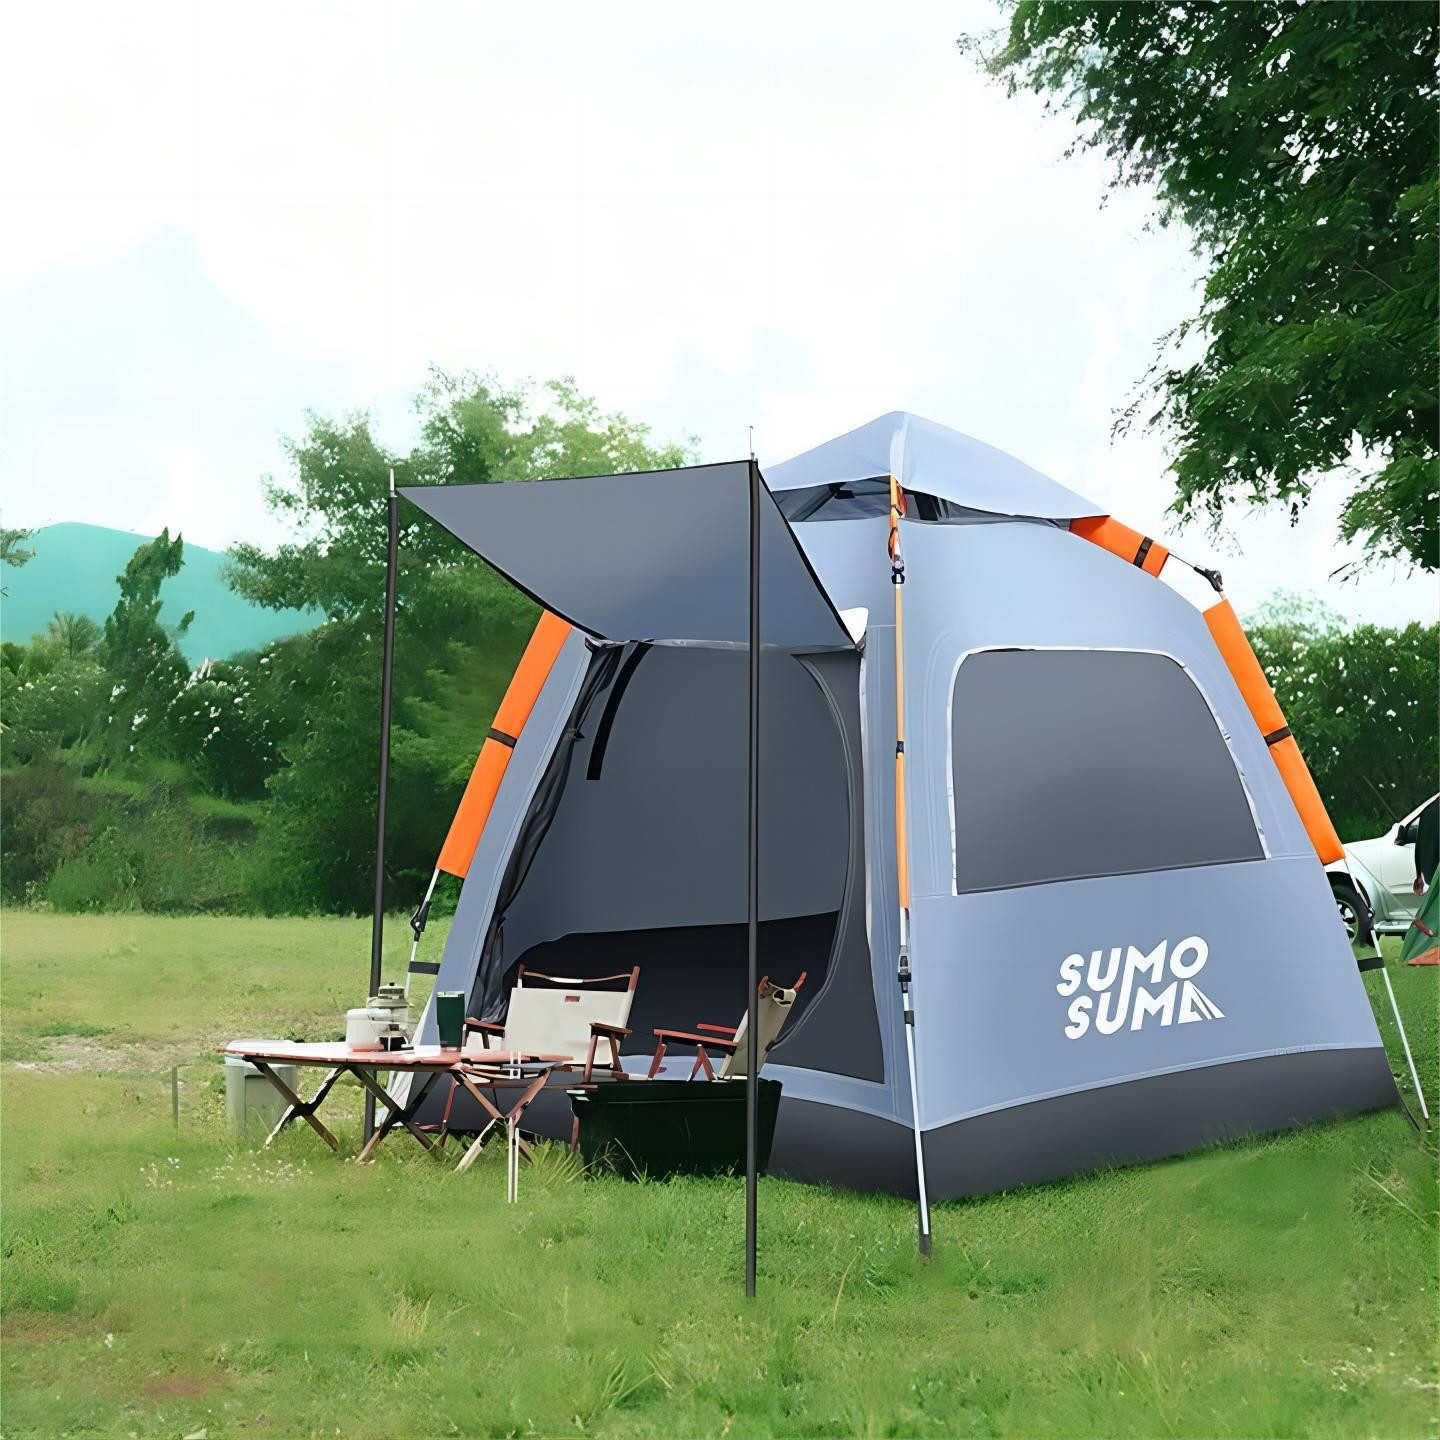 Sumosuma Kuppelzelt Campingzelt Automatisches, UV-Schutz Pop Up Zelt, with Vestibule, Personen: 4, Wasserdicht & Winddicht, Doppeltürig mit vier Fenstern mit Tragetasche